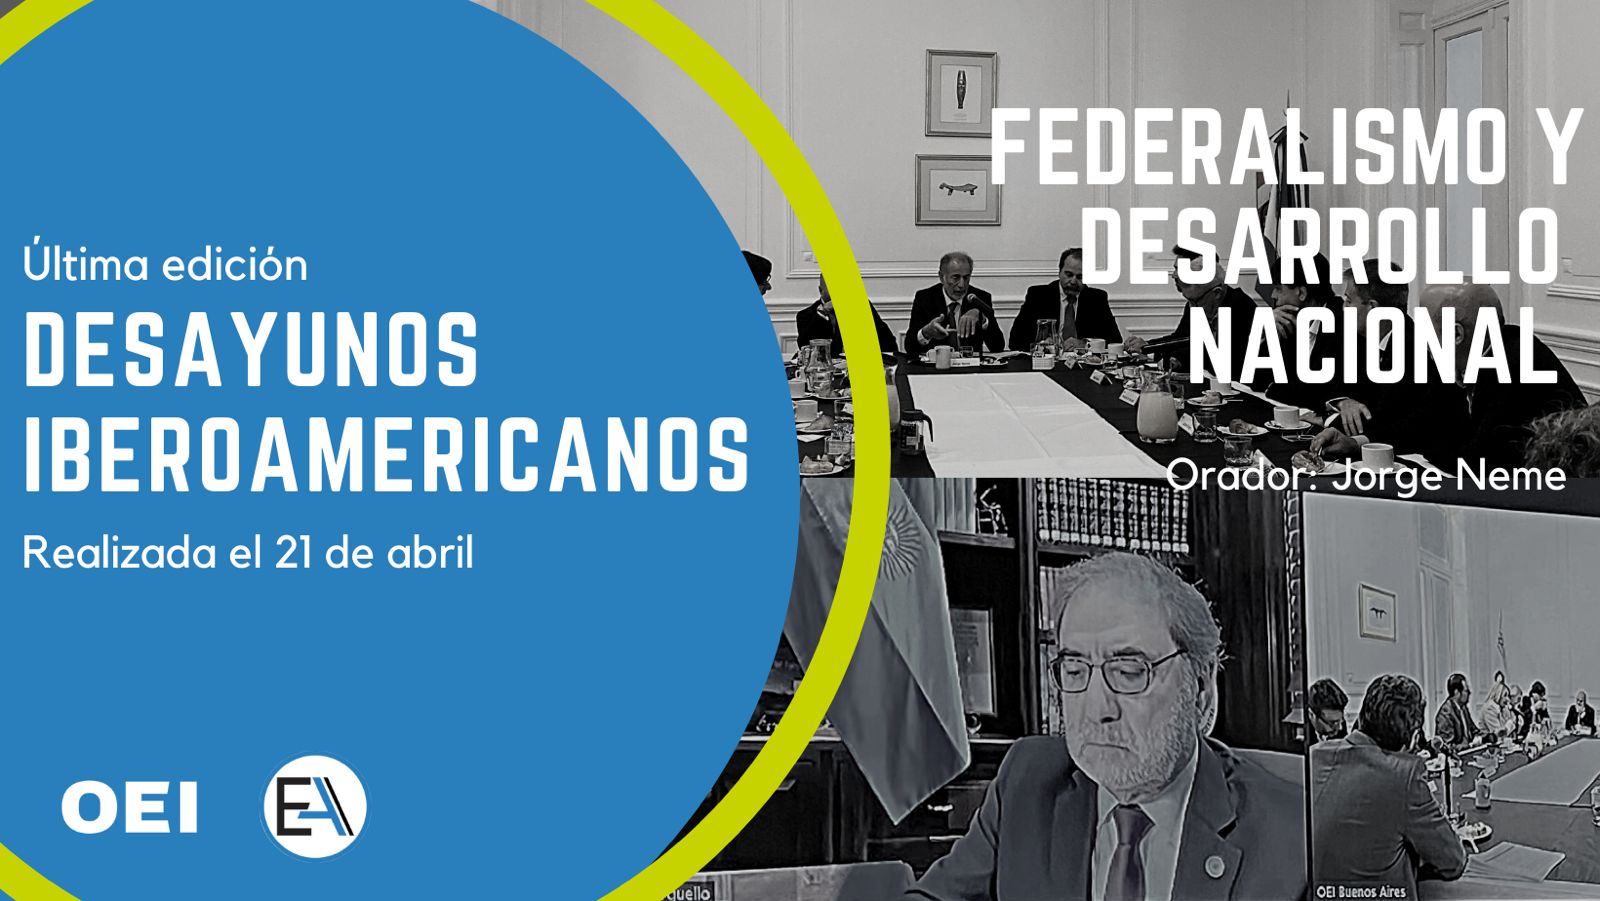 Desayunos Iberoamericanos: “Federalismo y Desarrollo Nacional”